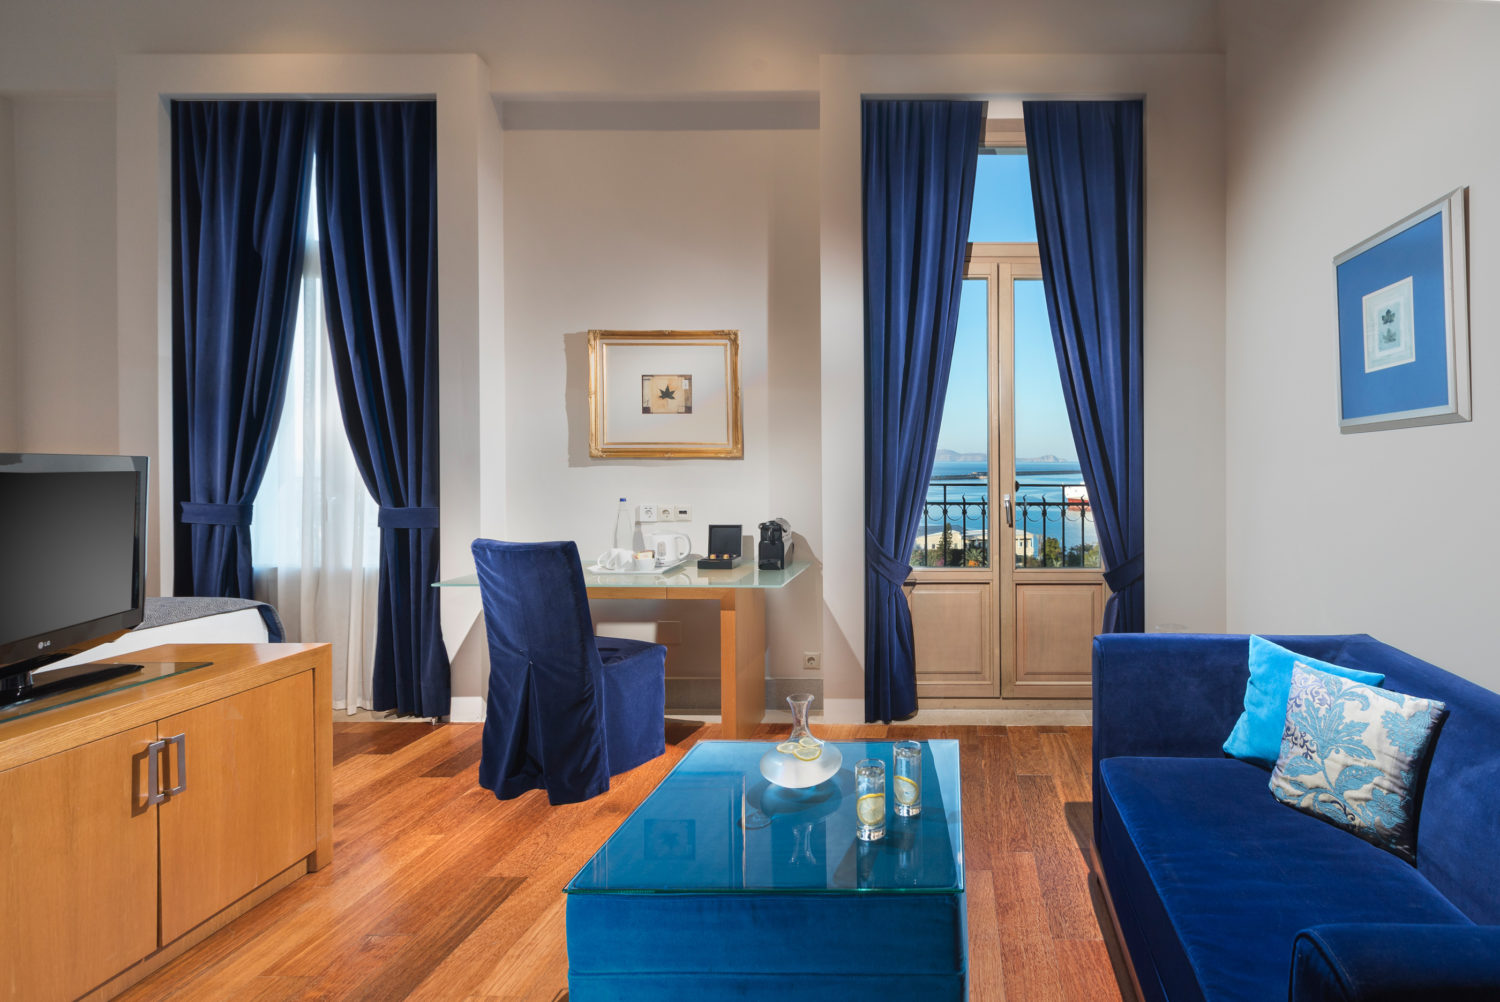 Les meilleurs hôtels 5 étoiles en Crète 2